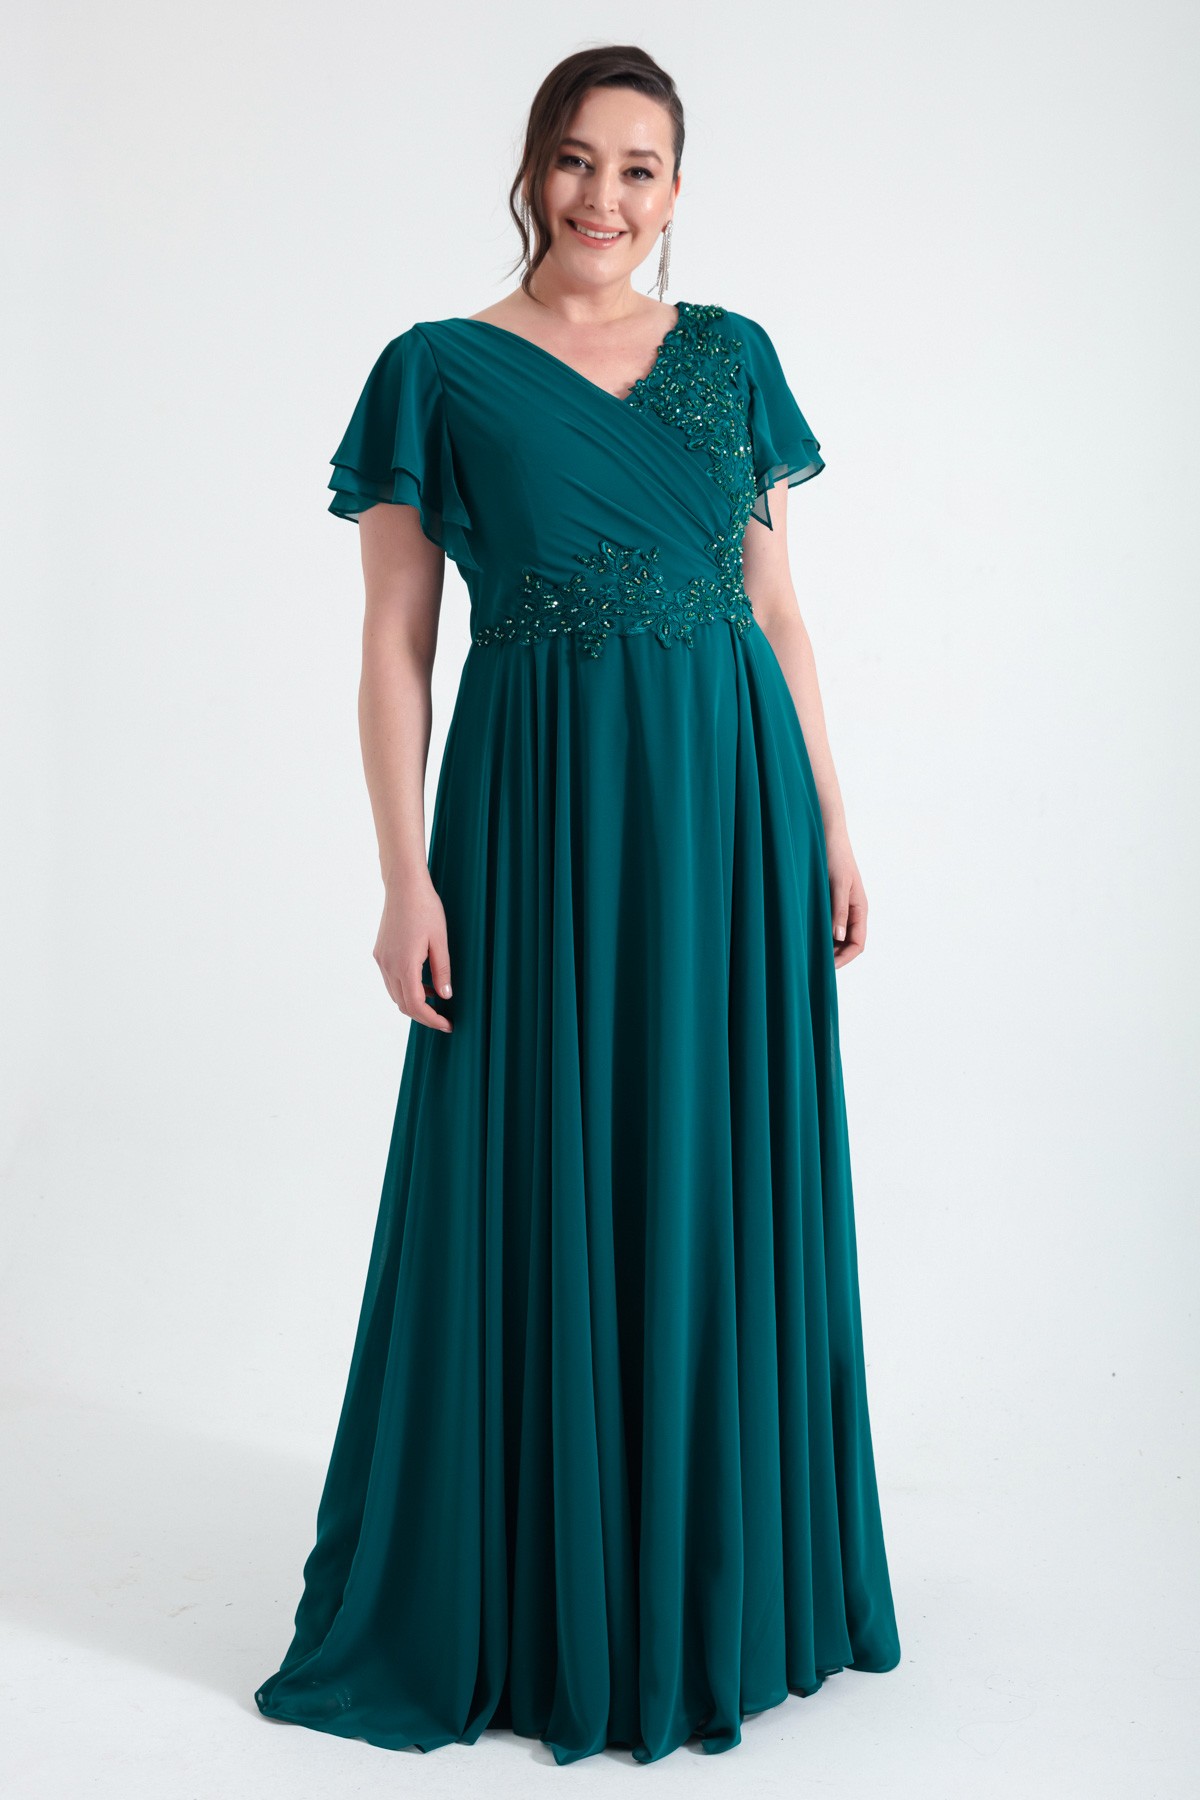 Kadın Kruvaze Taşlı Uzun Şifon Abiye Elbise - Zümrüt Yeşili